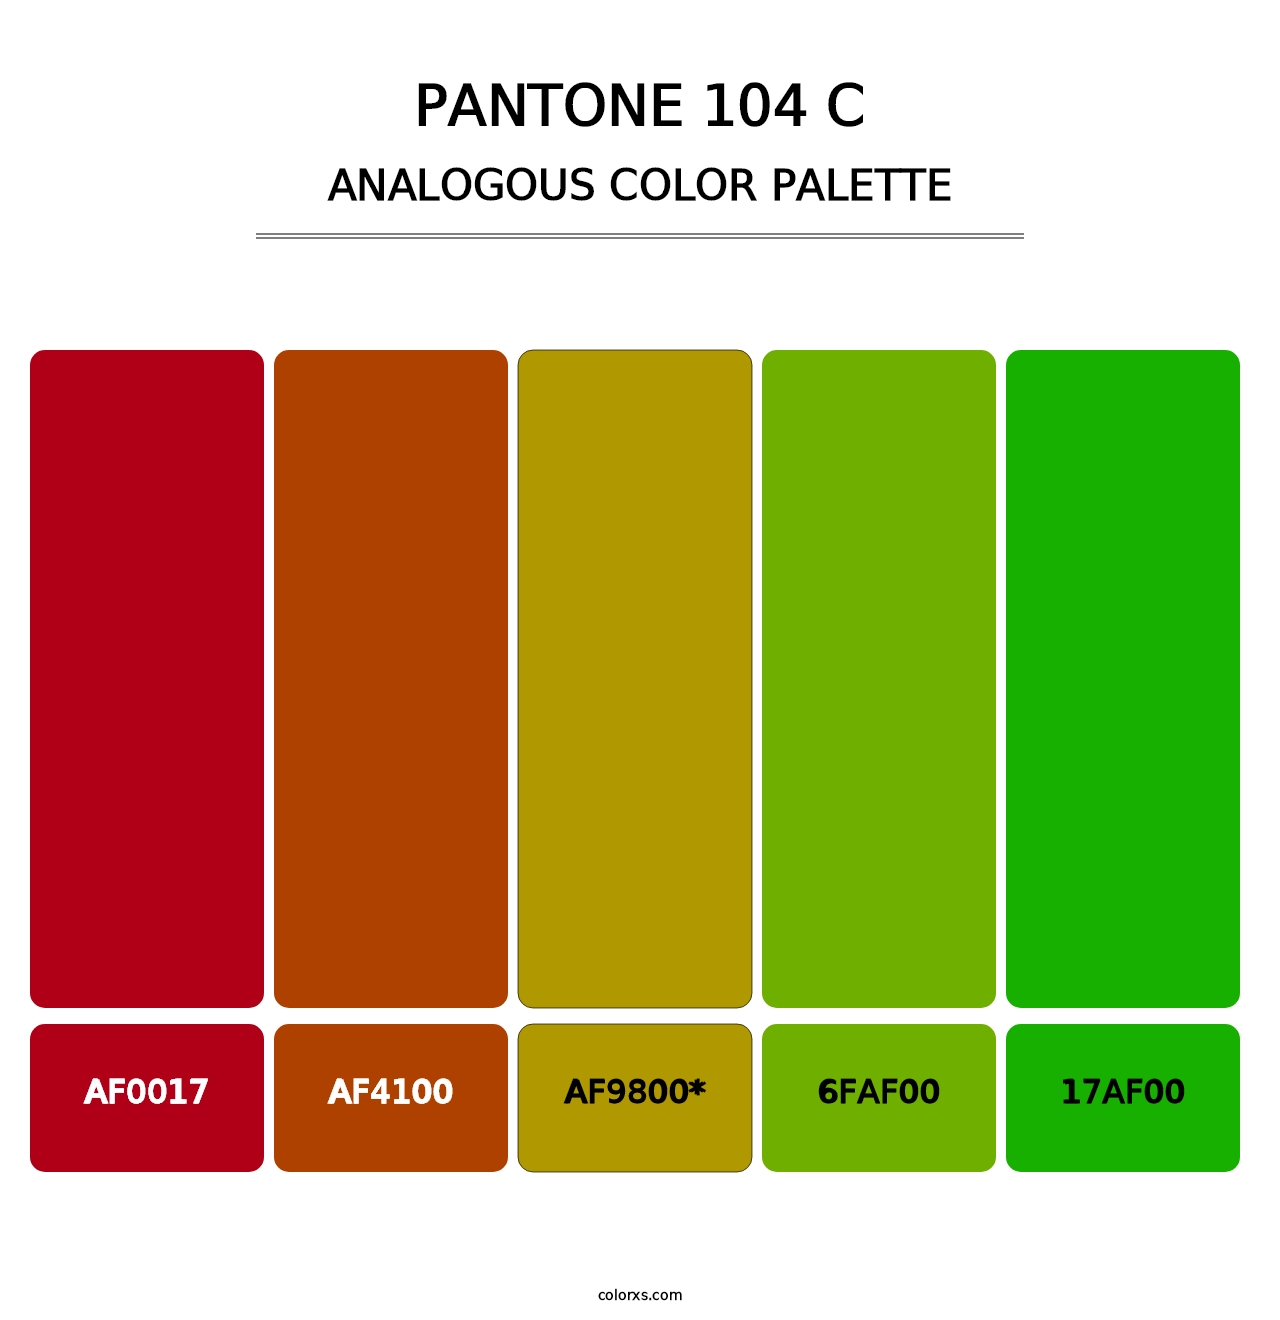 PANTONE 104 C - Analogous Color Palette